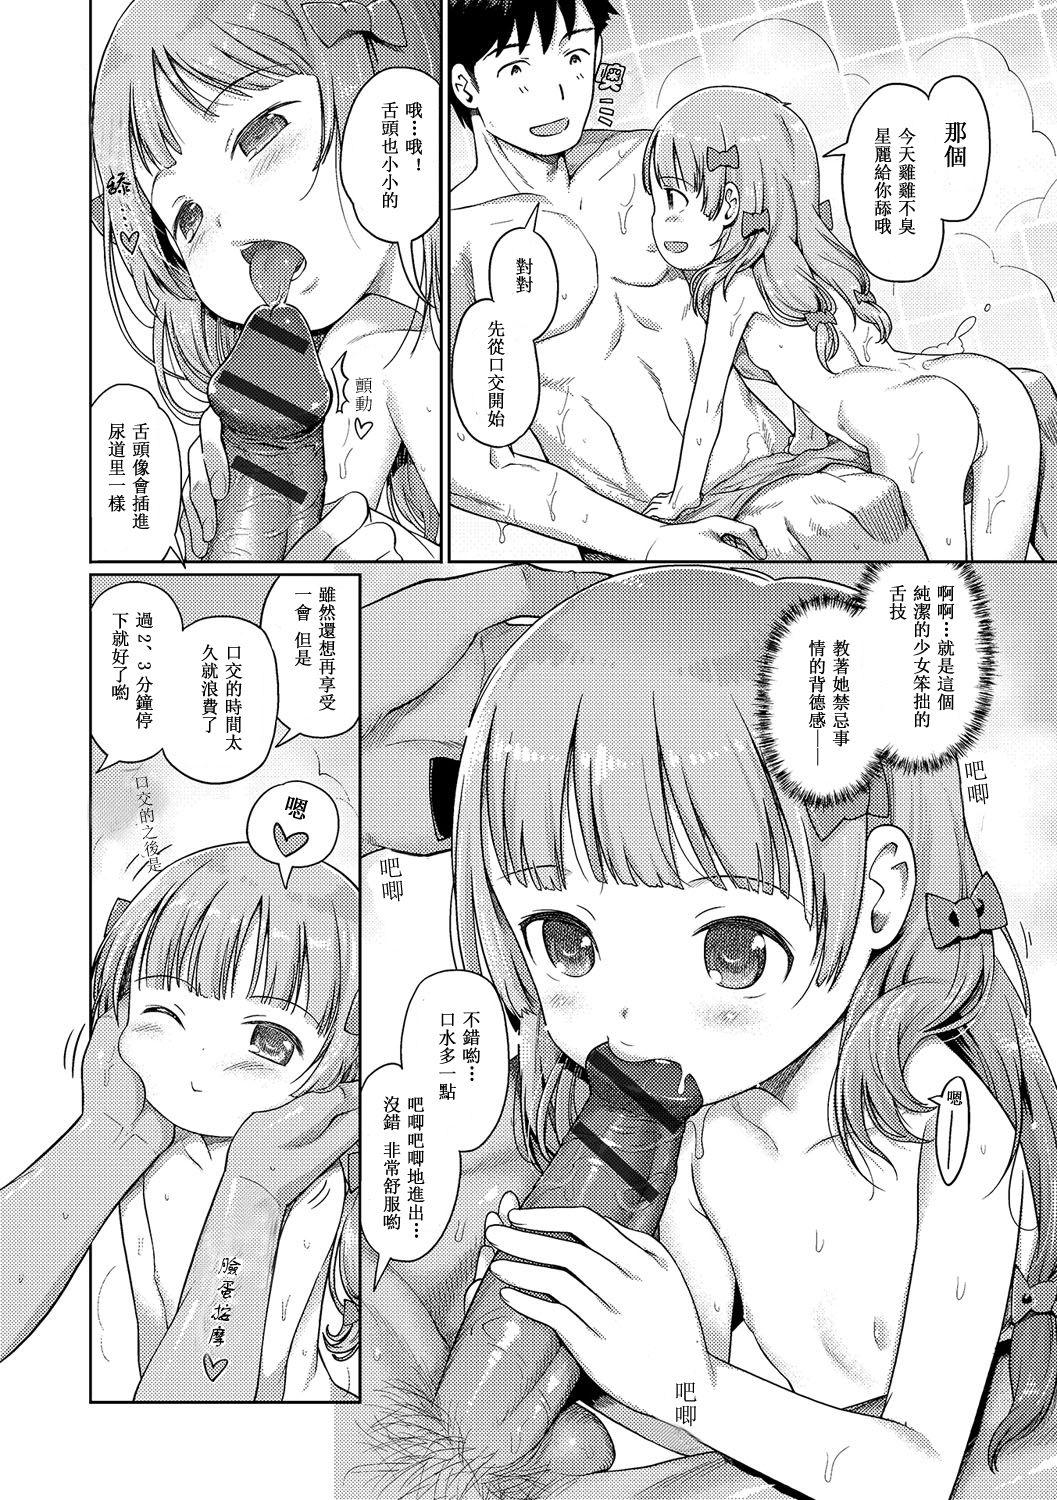 Hot Girls Getting Fucked Awa no Ohime-sama # 8 Fairy no Shinjin Kenshuu Futatabi? Nudes - Page 5